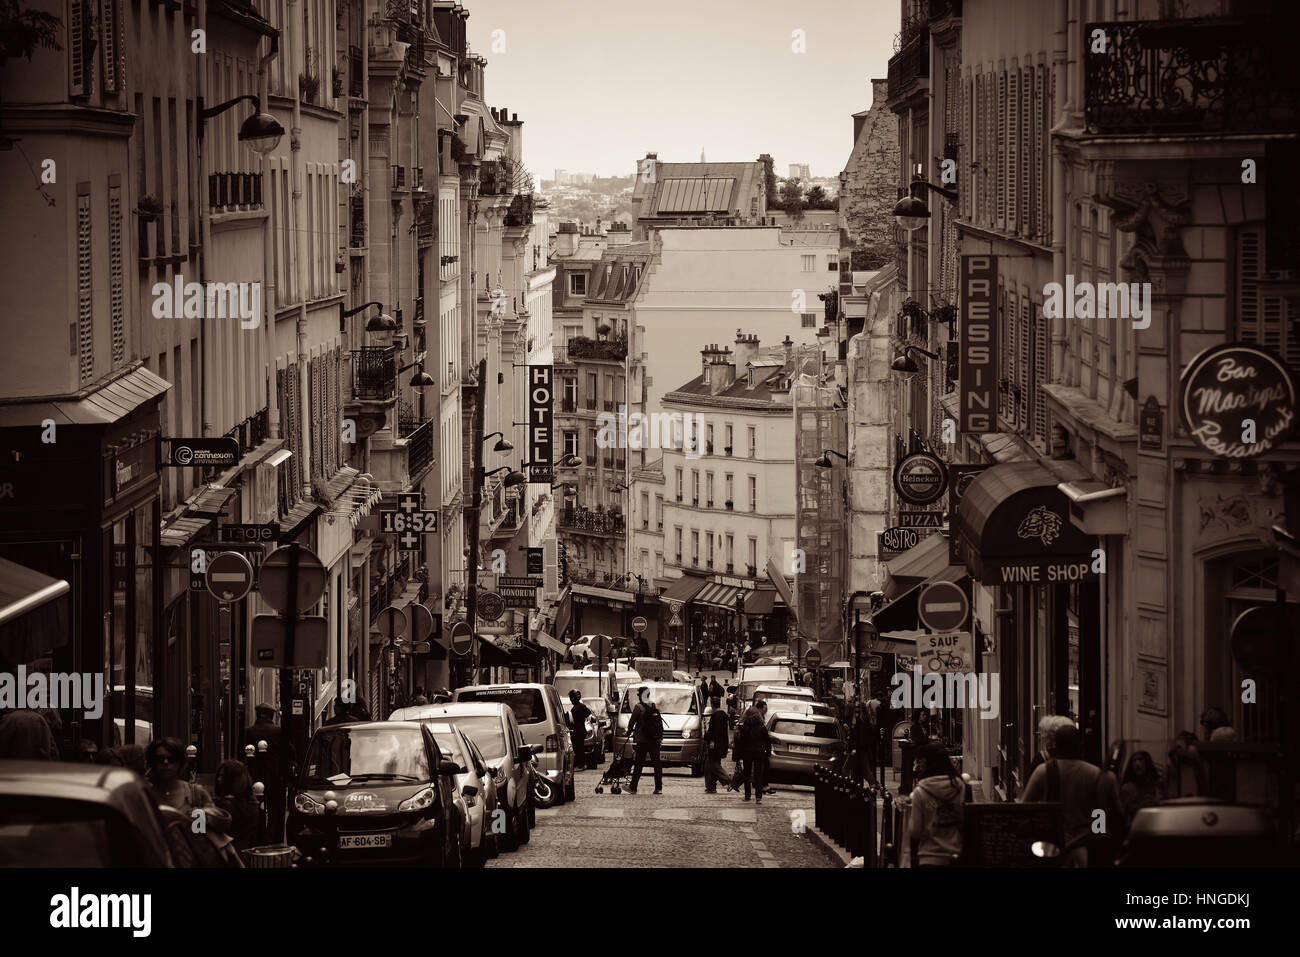 PARIS, FRANCE - Le 13 mai : Street view avec bars et boutiques le 13 mai 2015 à Paris. C'est le plus visité au monde payé annuel avec 250M v Banque D'Images